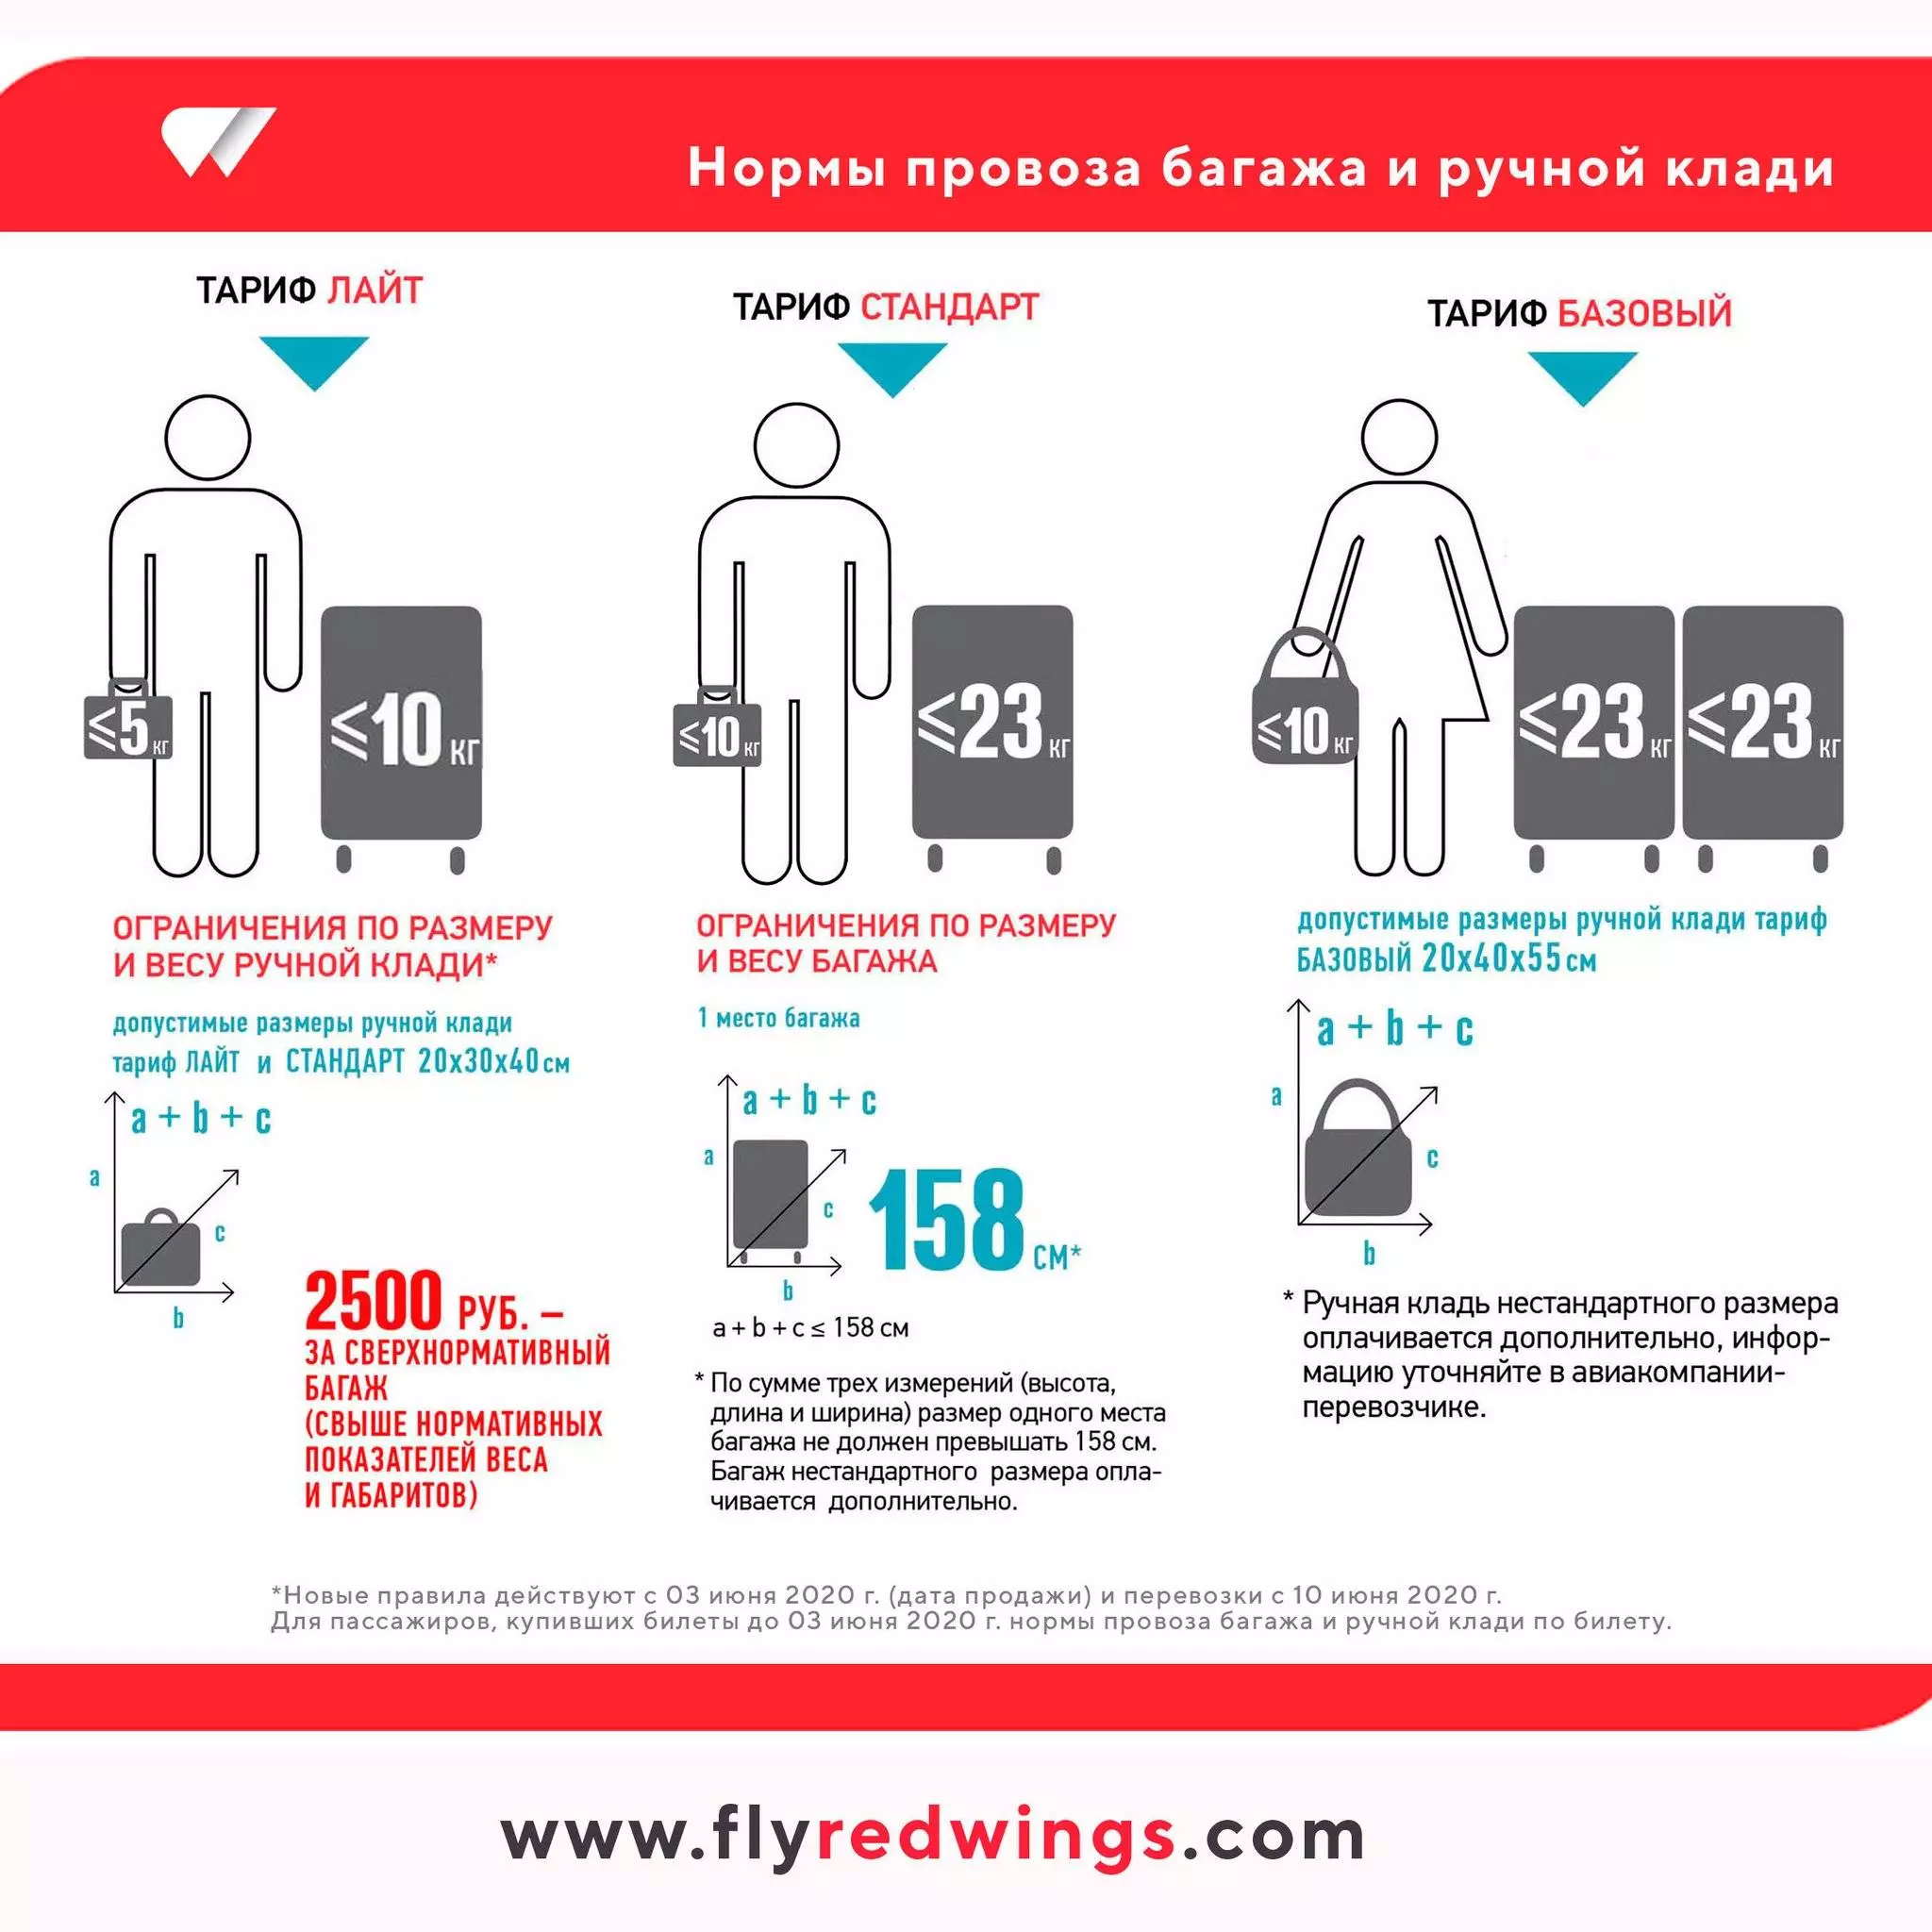 Особенности провоза различных видов багажа в авиакомпании россия